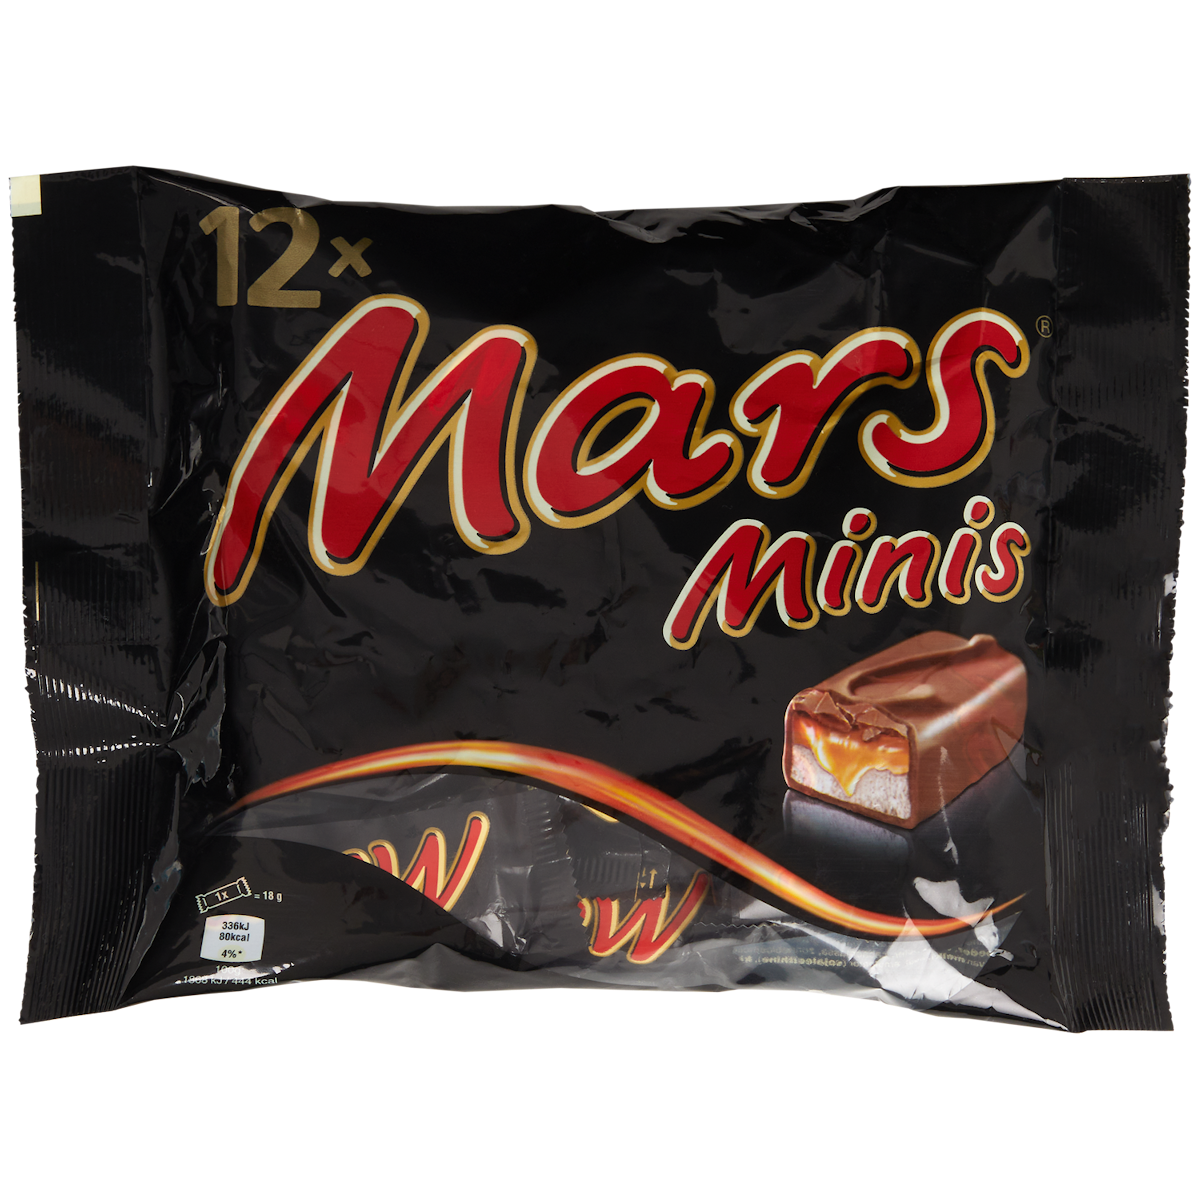 Mars Mini's